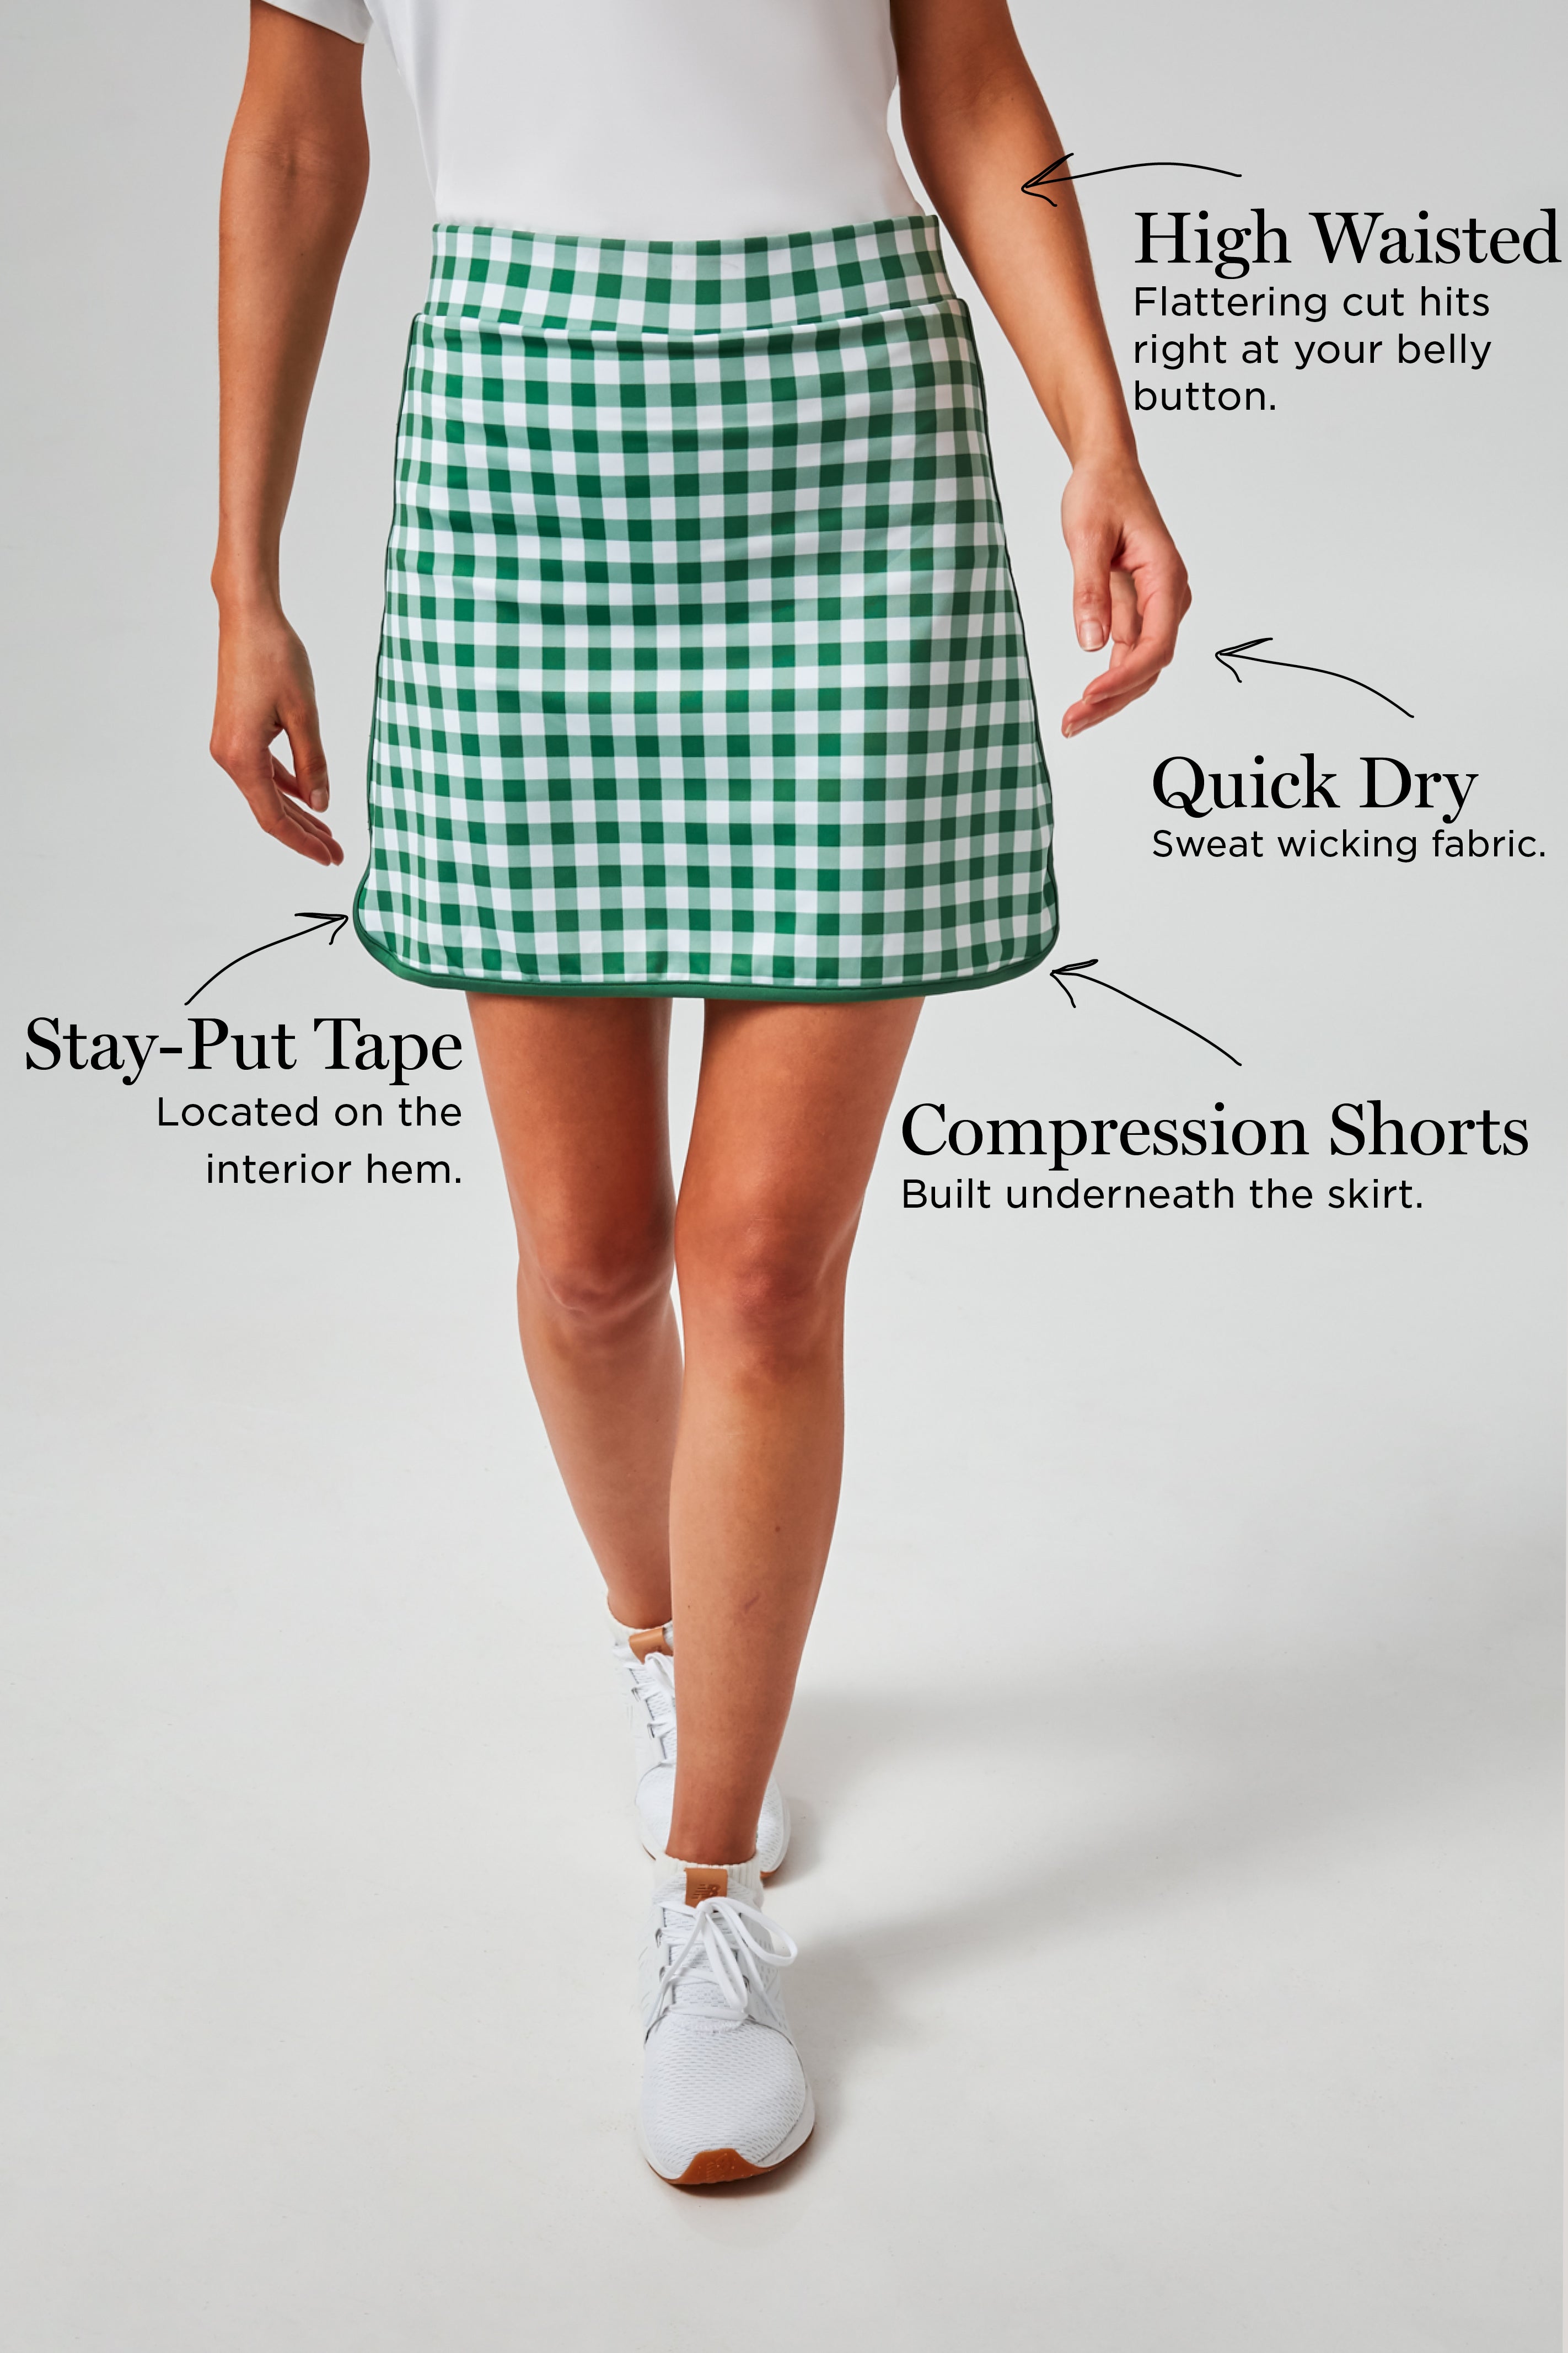 Cotton Plaid Golf Trousers, Par 5